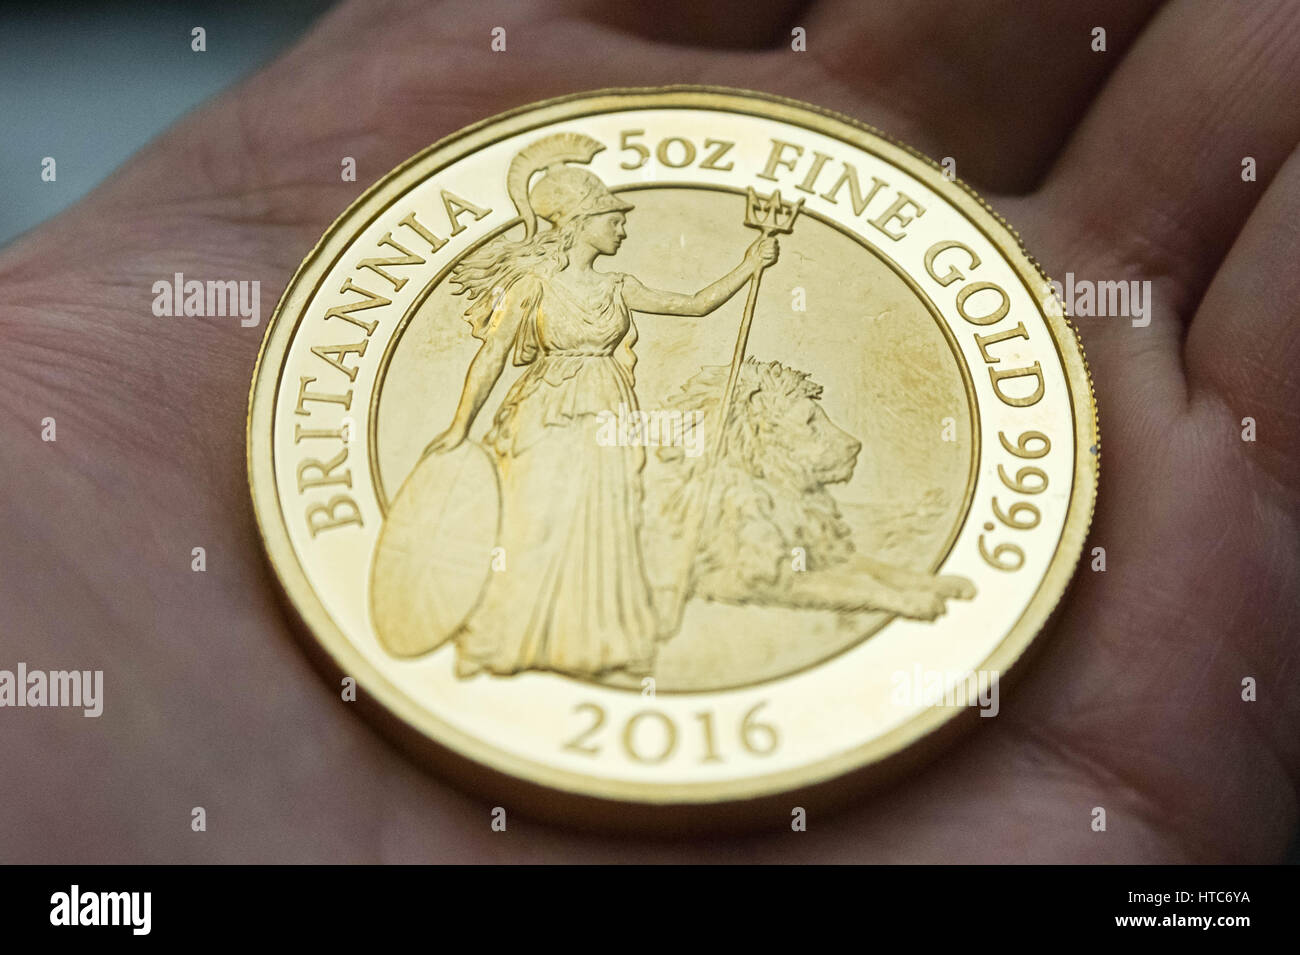 Así como la norma de monedas, la Oficina también pruebas de ensayo de Londres monedas conmemorativas. Fotografiados aquí un oro puro 999 Prueba de moneda soberana. Foto de stock